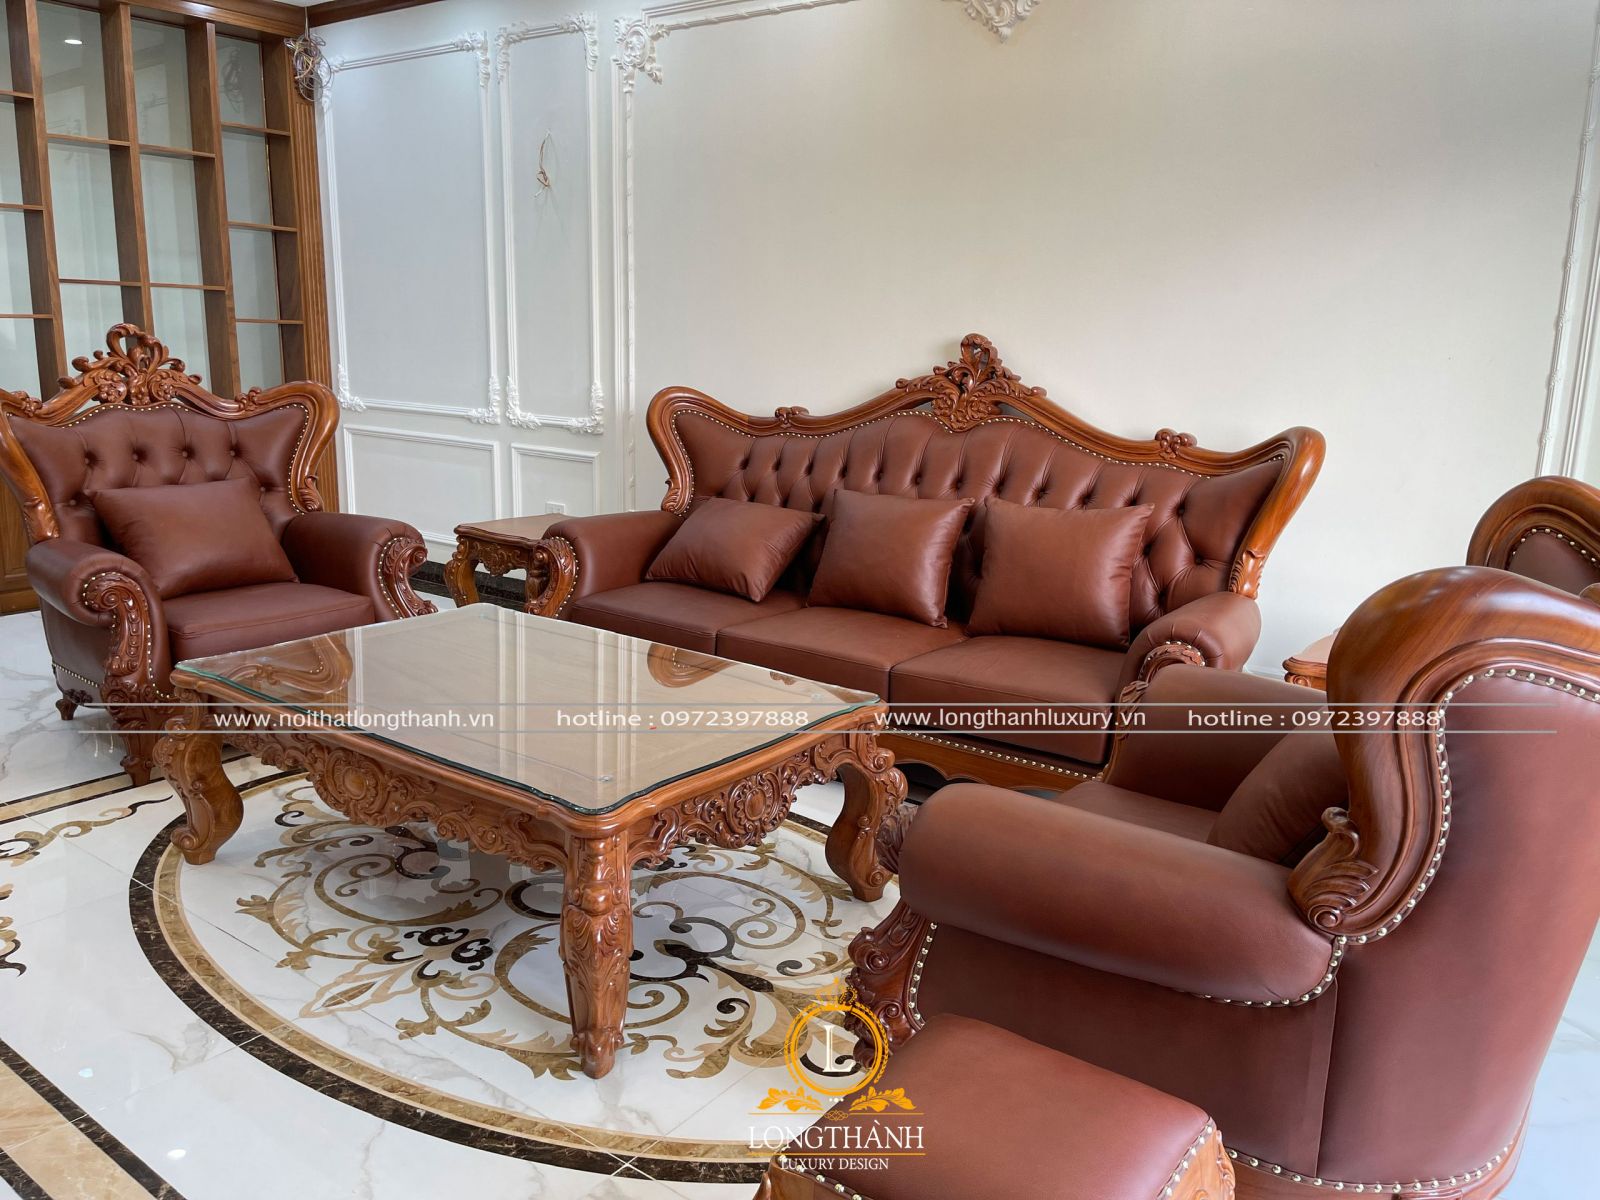 Thi công nội thất bàn ghế sofa tân cổ điển biệt thự Hồ Chí Minh